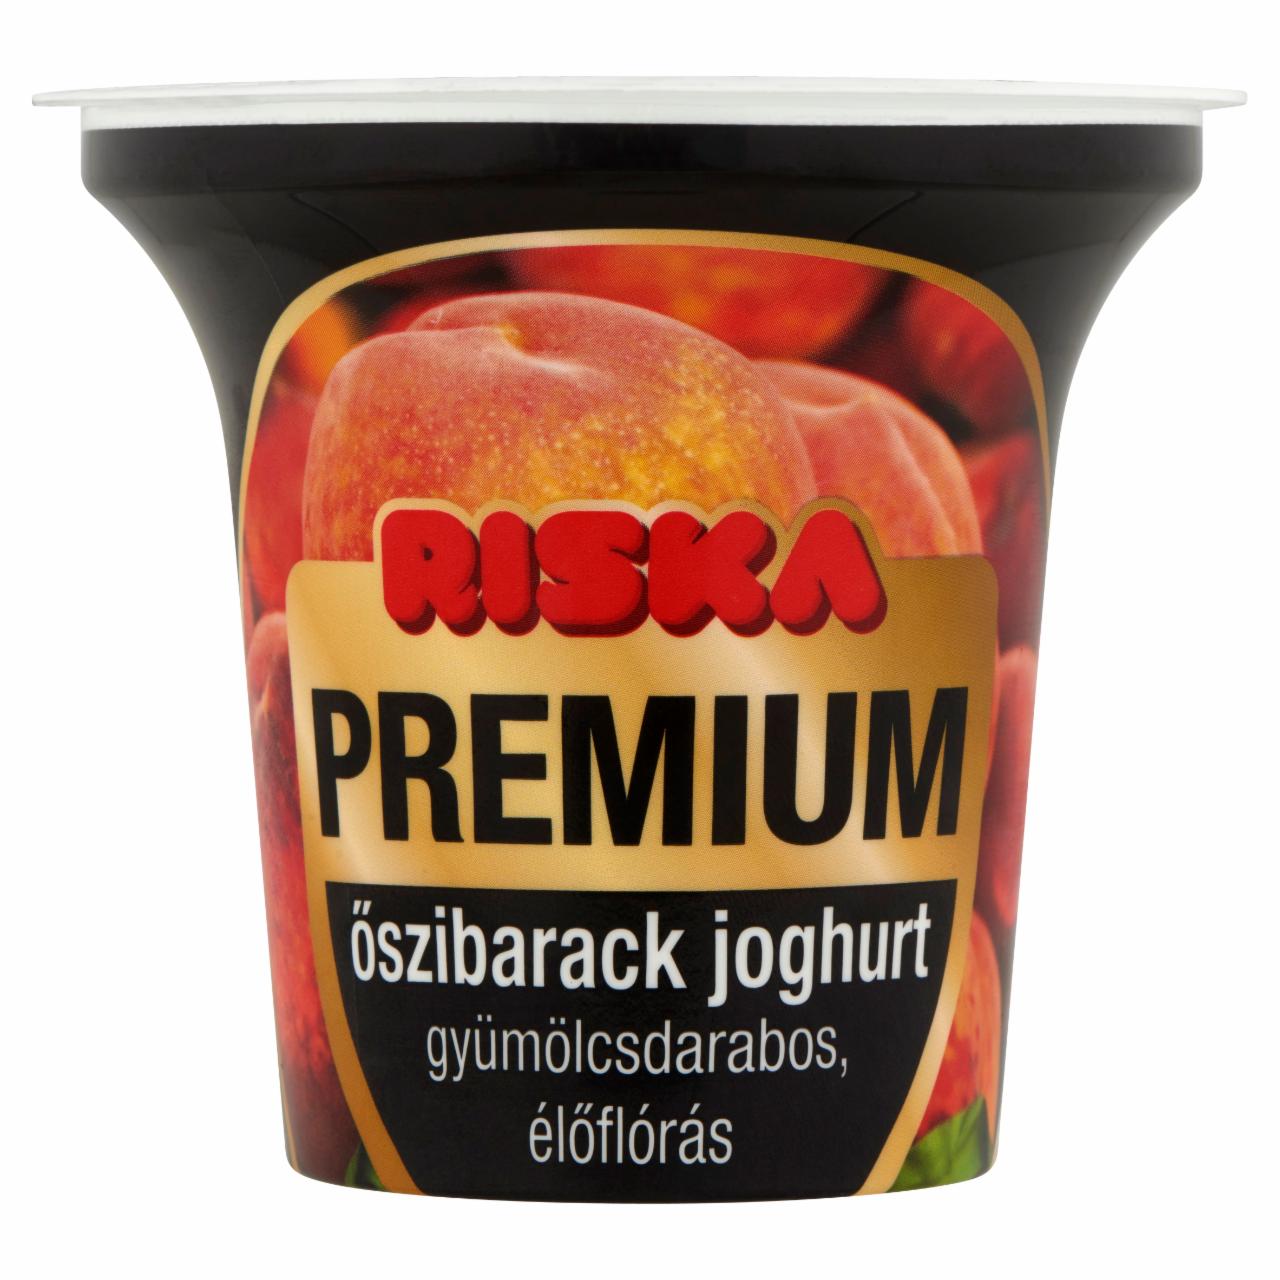 Képek - Riska Premium gyümölcsdarabos, élőflórás őszibarack joghurt 200 g